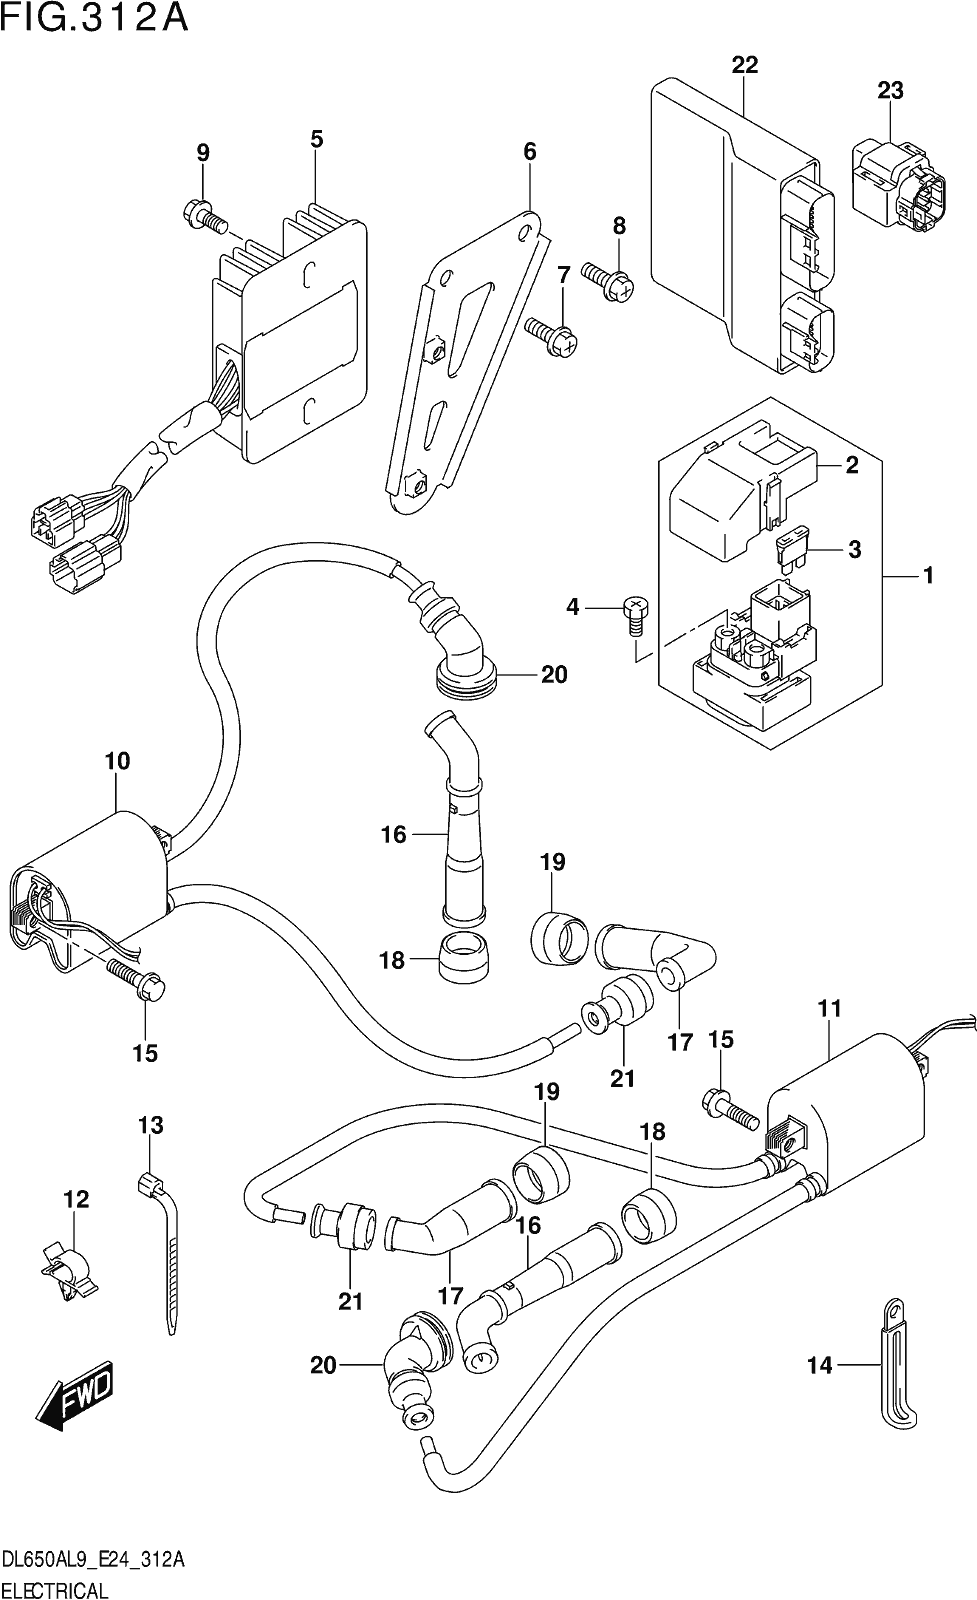 Fig.312a Electrical (dl650xa,dl650a)